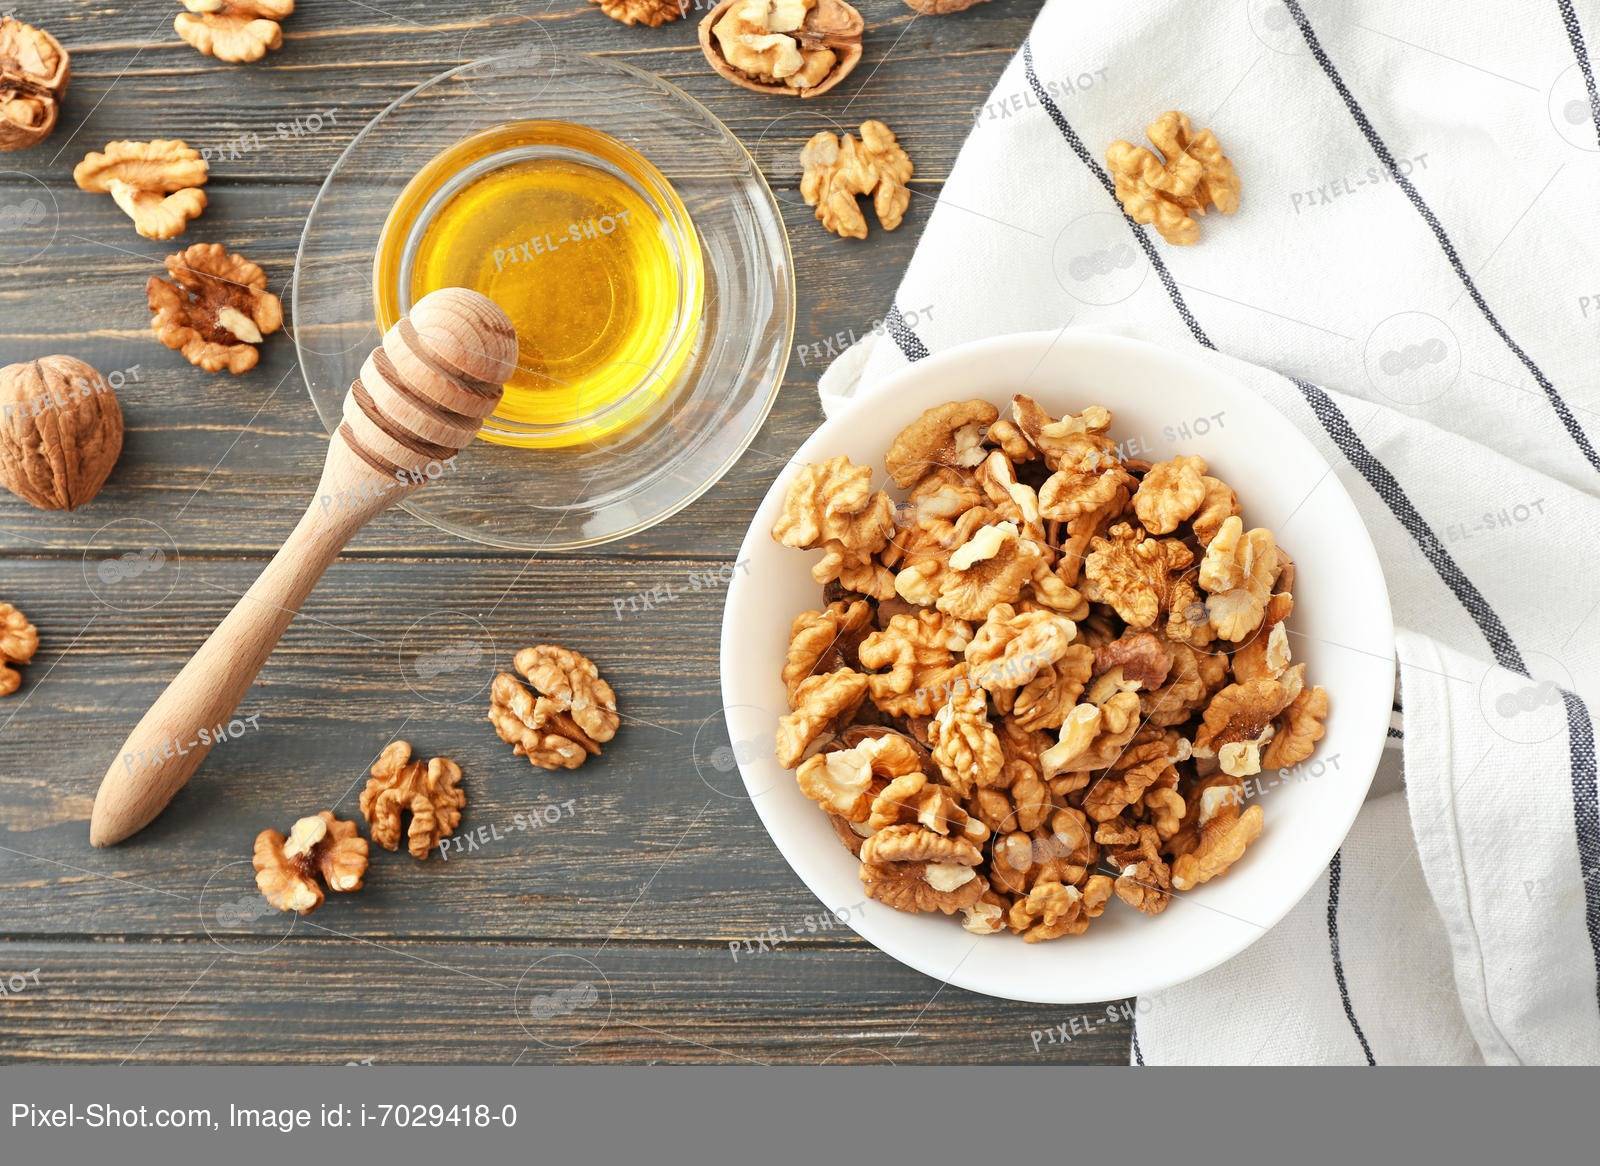 Грецкие орехи с медом: польза и вред, рецепты для мужчин и женщин